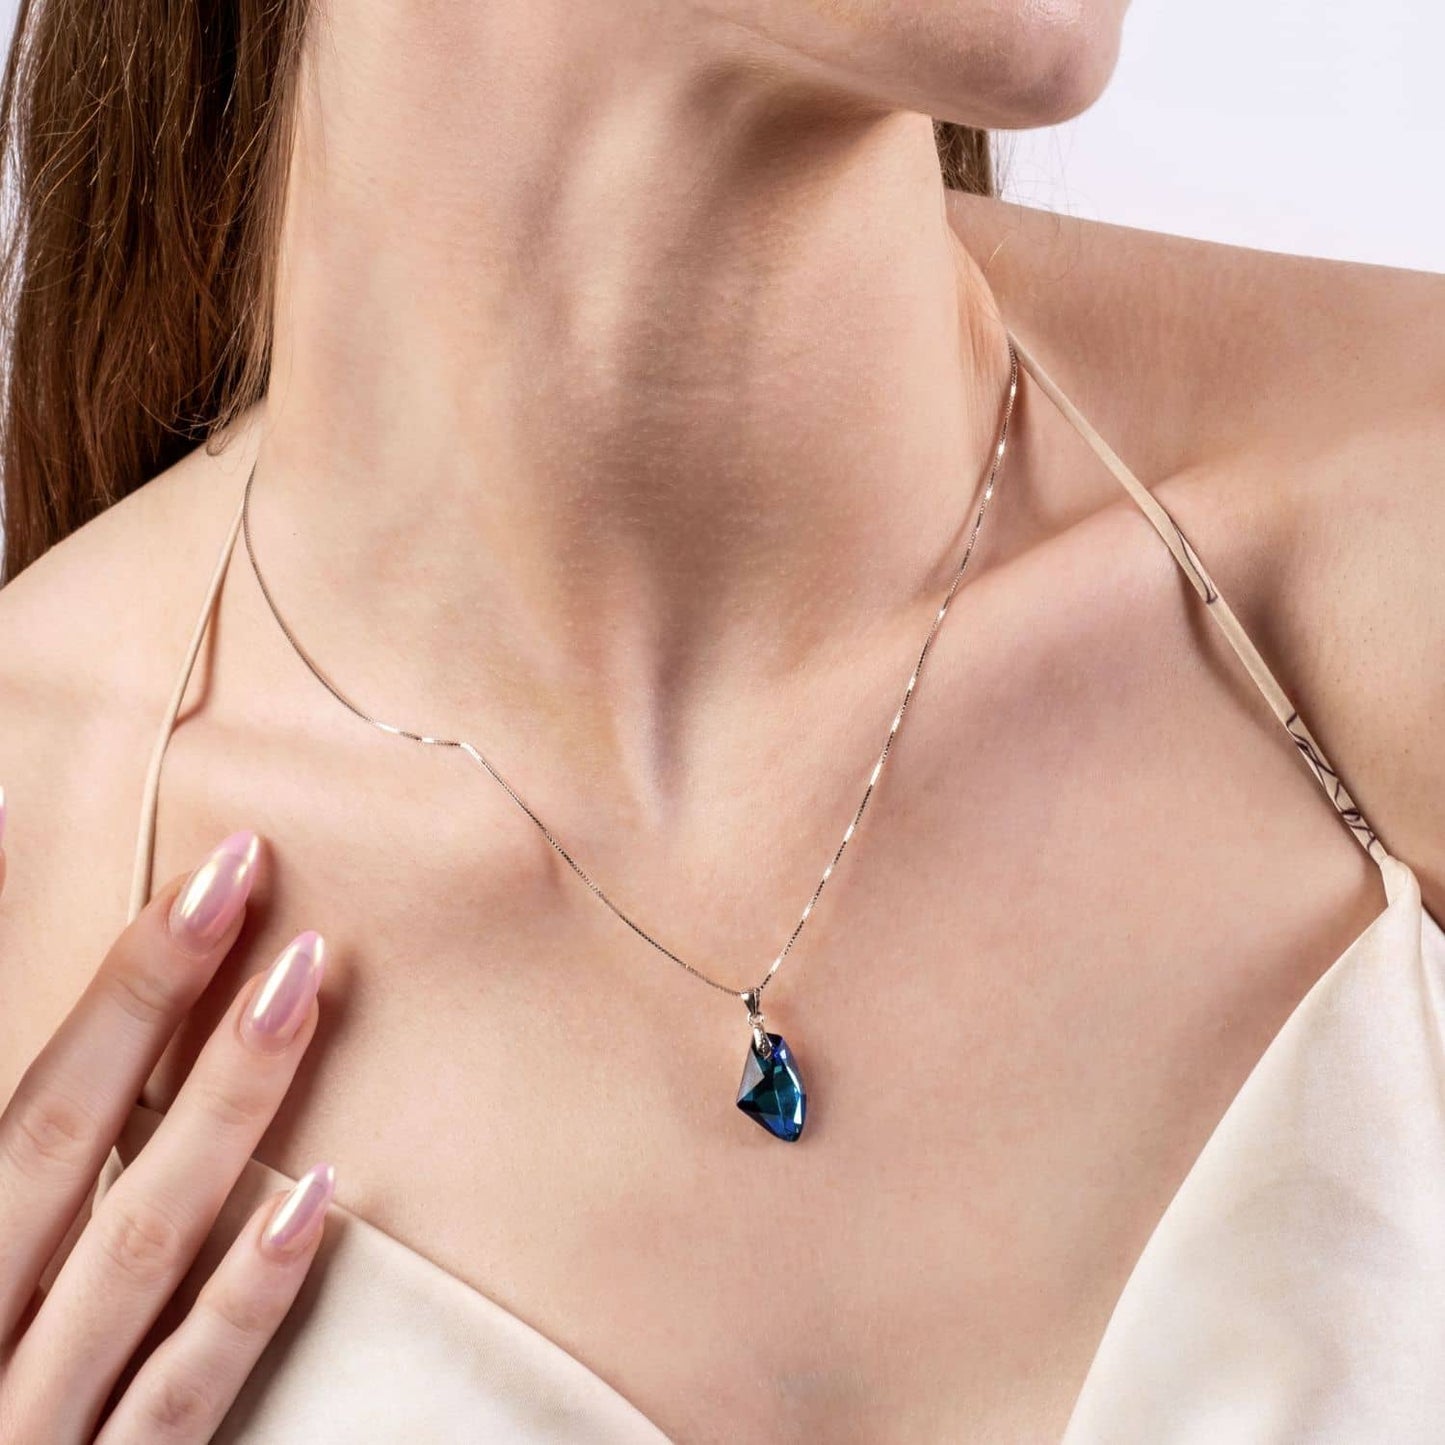 Bermuda Blue Haven Necklace with Austrian Crystals